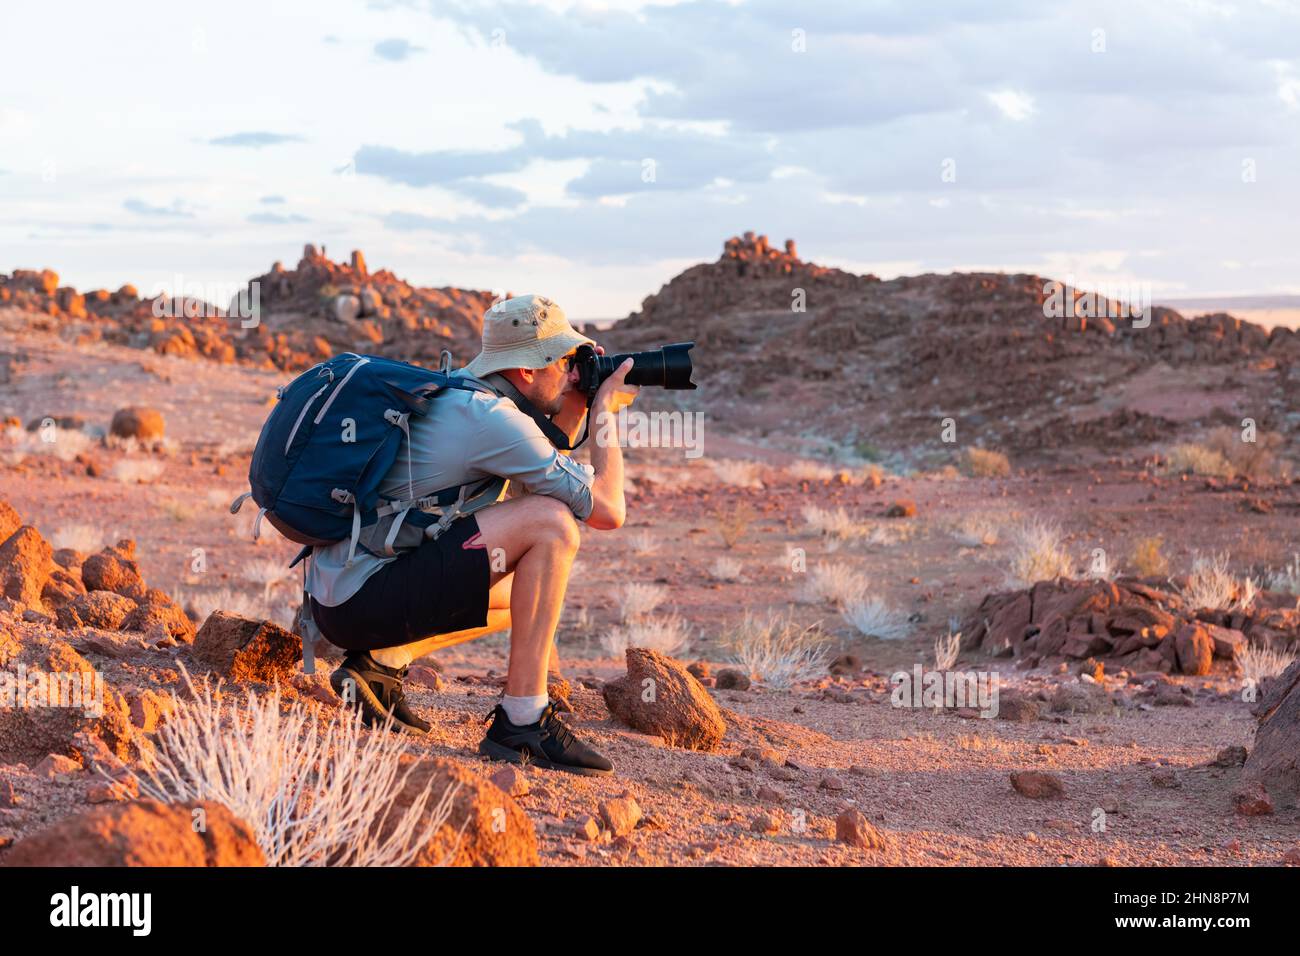 Photographe prenant des photos dans les rochers du désert de Namib, Namibie, Afrique. Montagnes rouges et ciel de coucher de soleil en arrière-plan. Photographie de paysage Banque D'Images